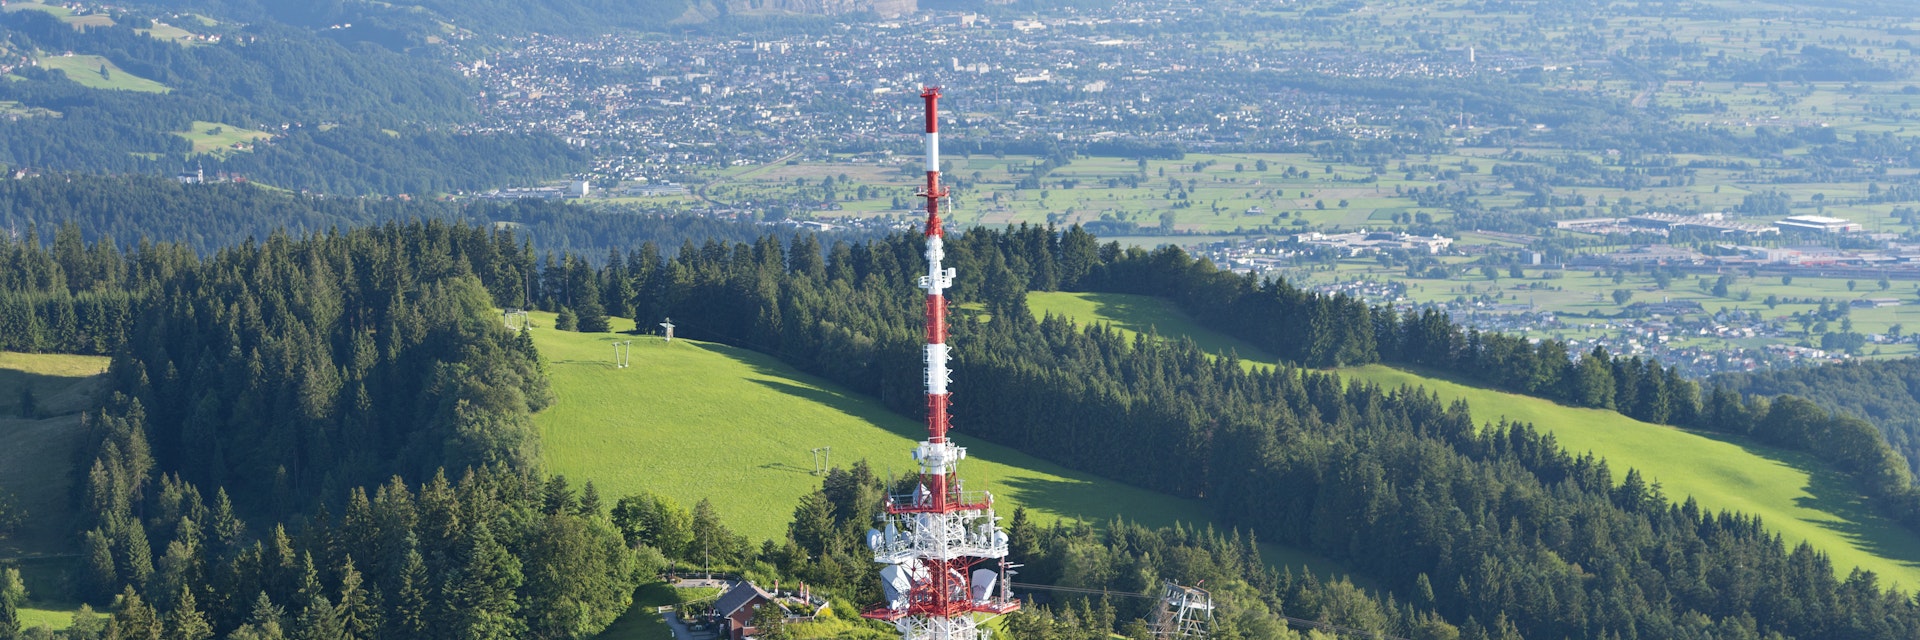 Austria, Vorarlberg, Bregenz, aerial view of radio tower on Pfaenderspitze